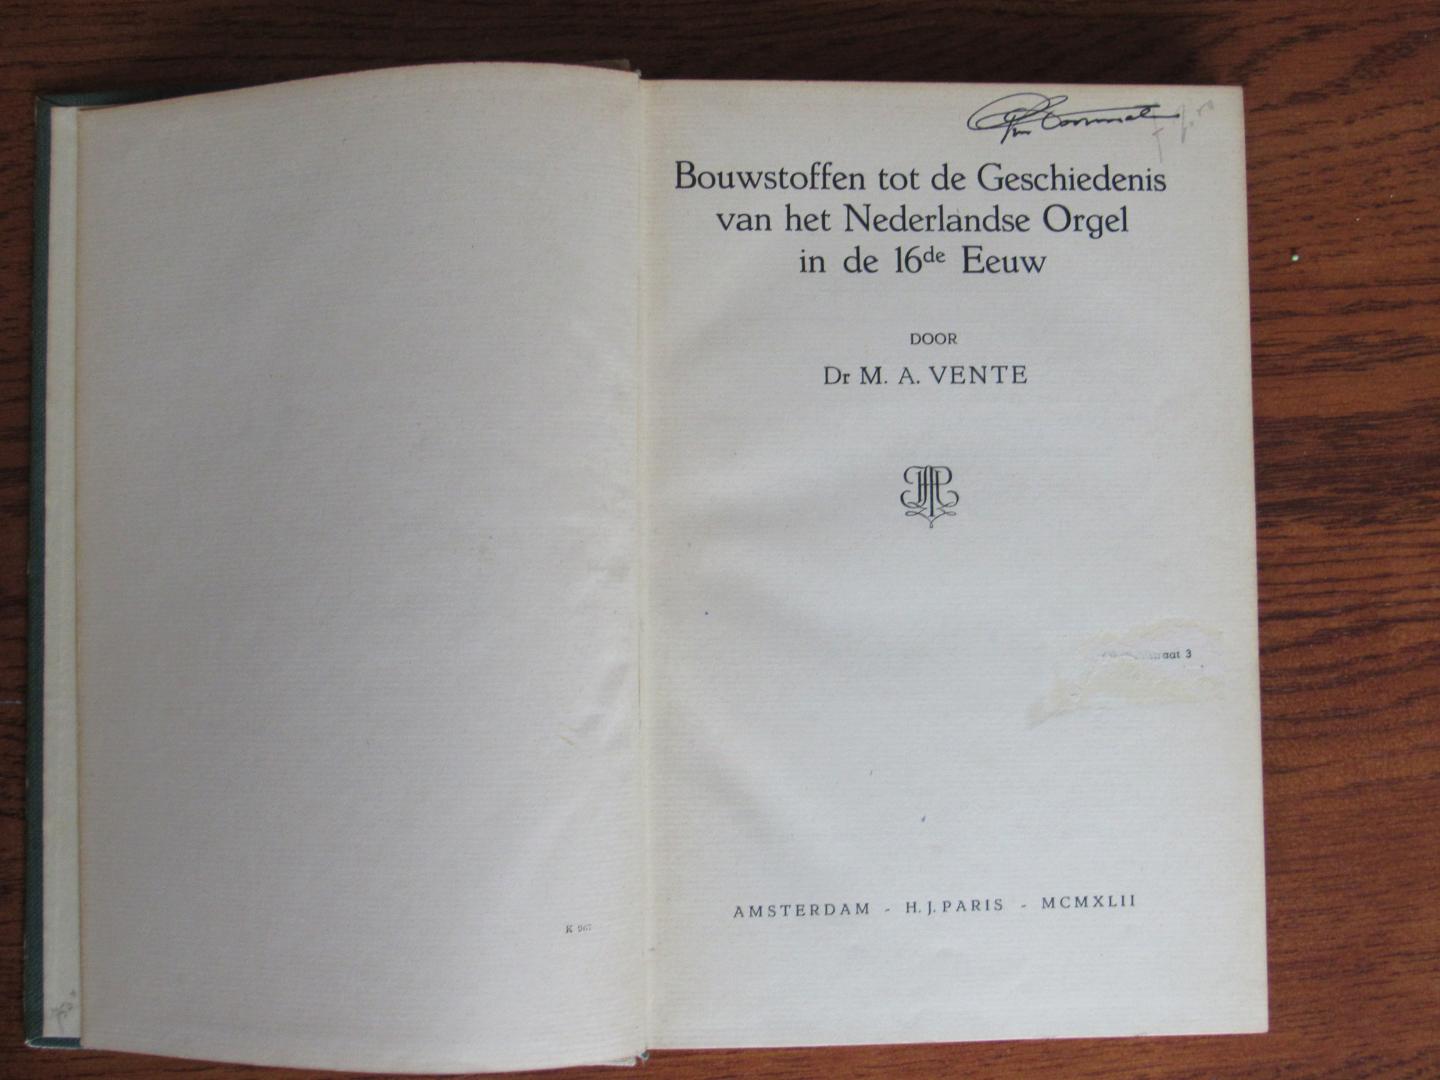 Vente, M.A. - Bouwstoffen tot de Geschiedenis van het Nederlandse Orgel in de 16de Eeuw